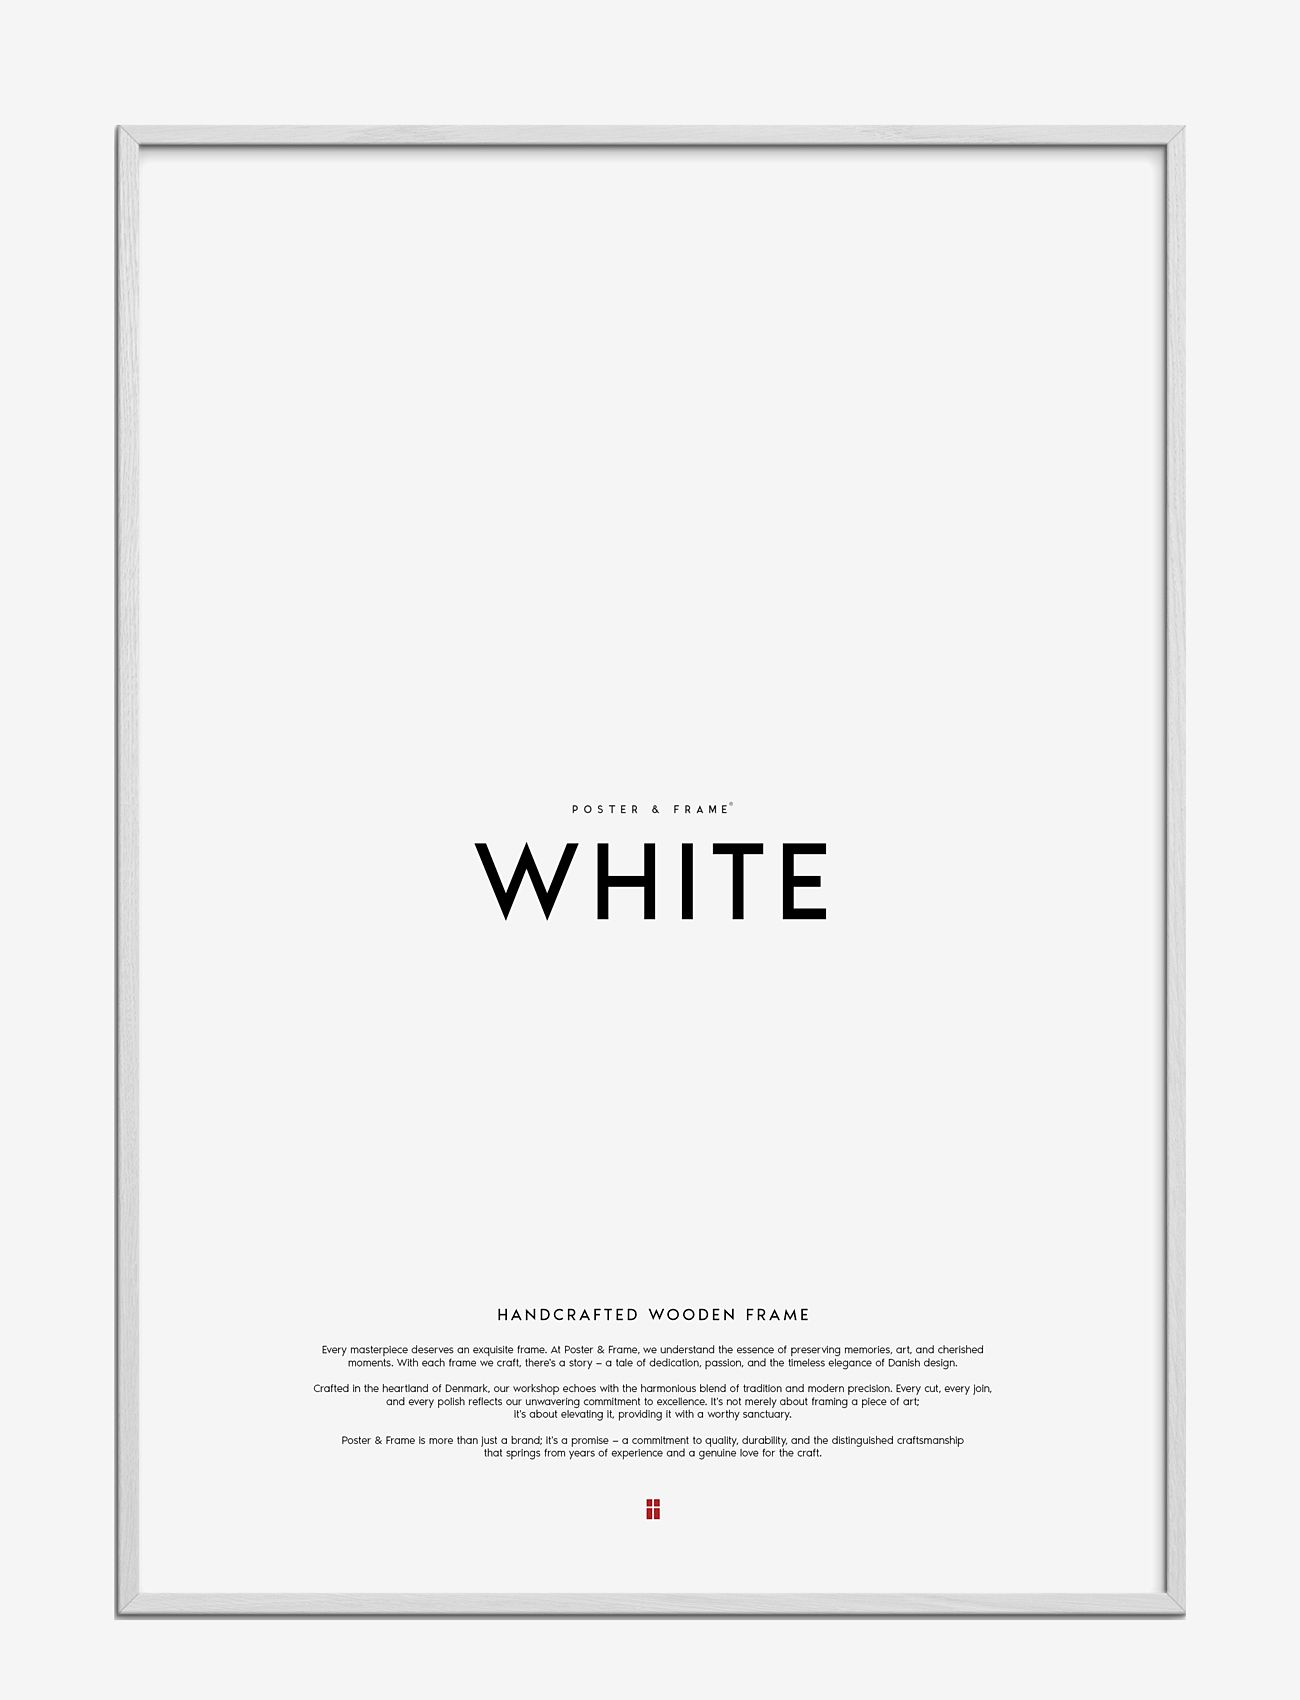 Poster & Frame - White Wood Frame - laveste priser - white - 0